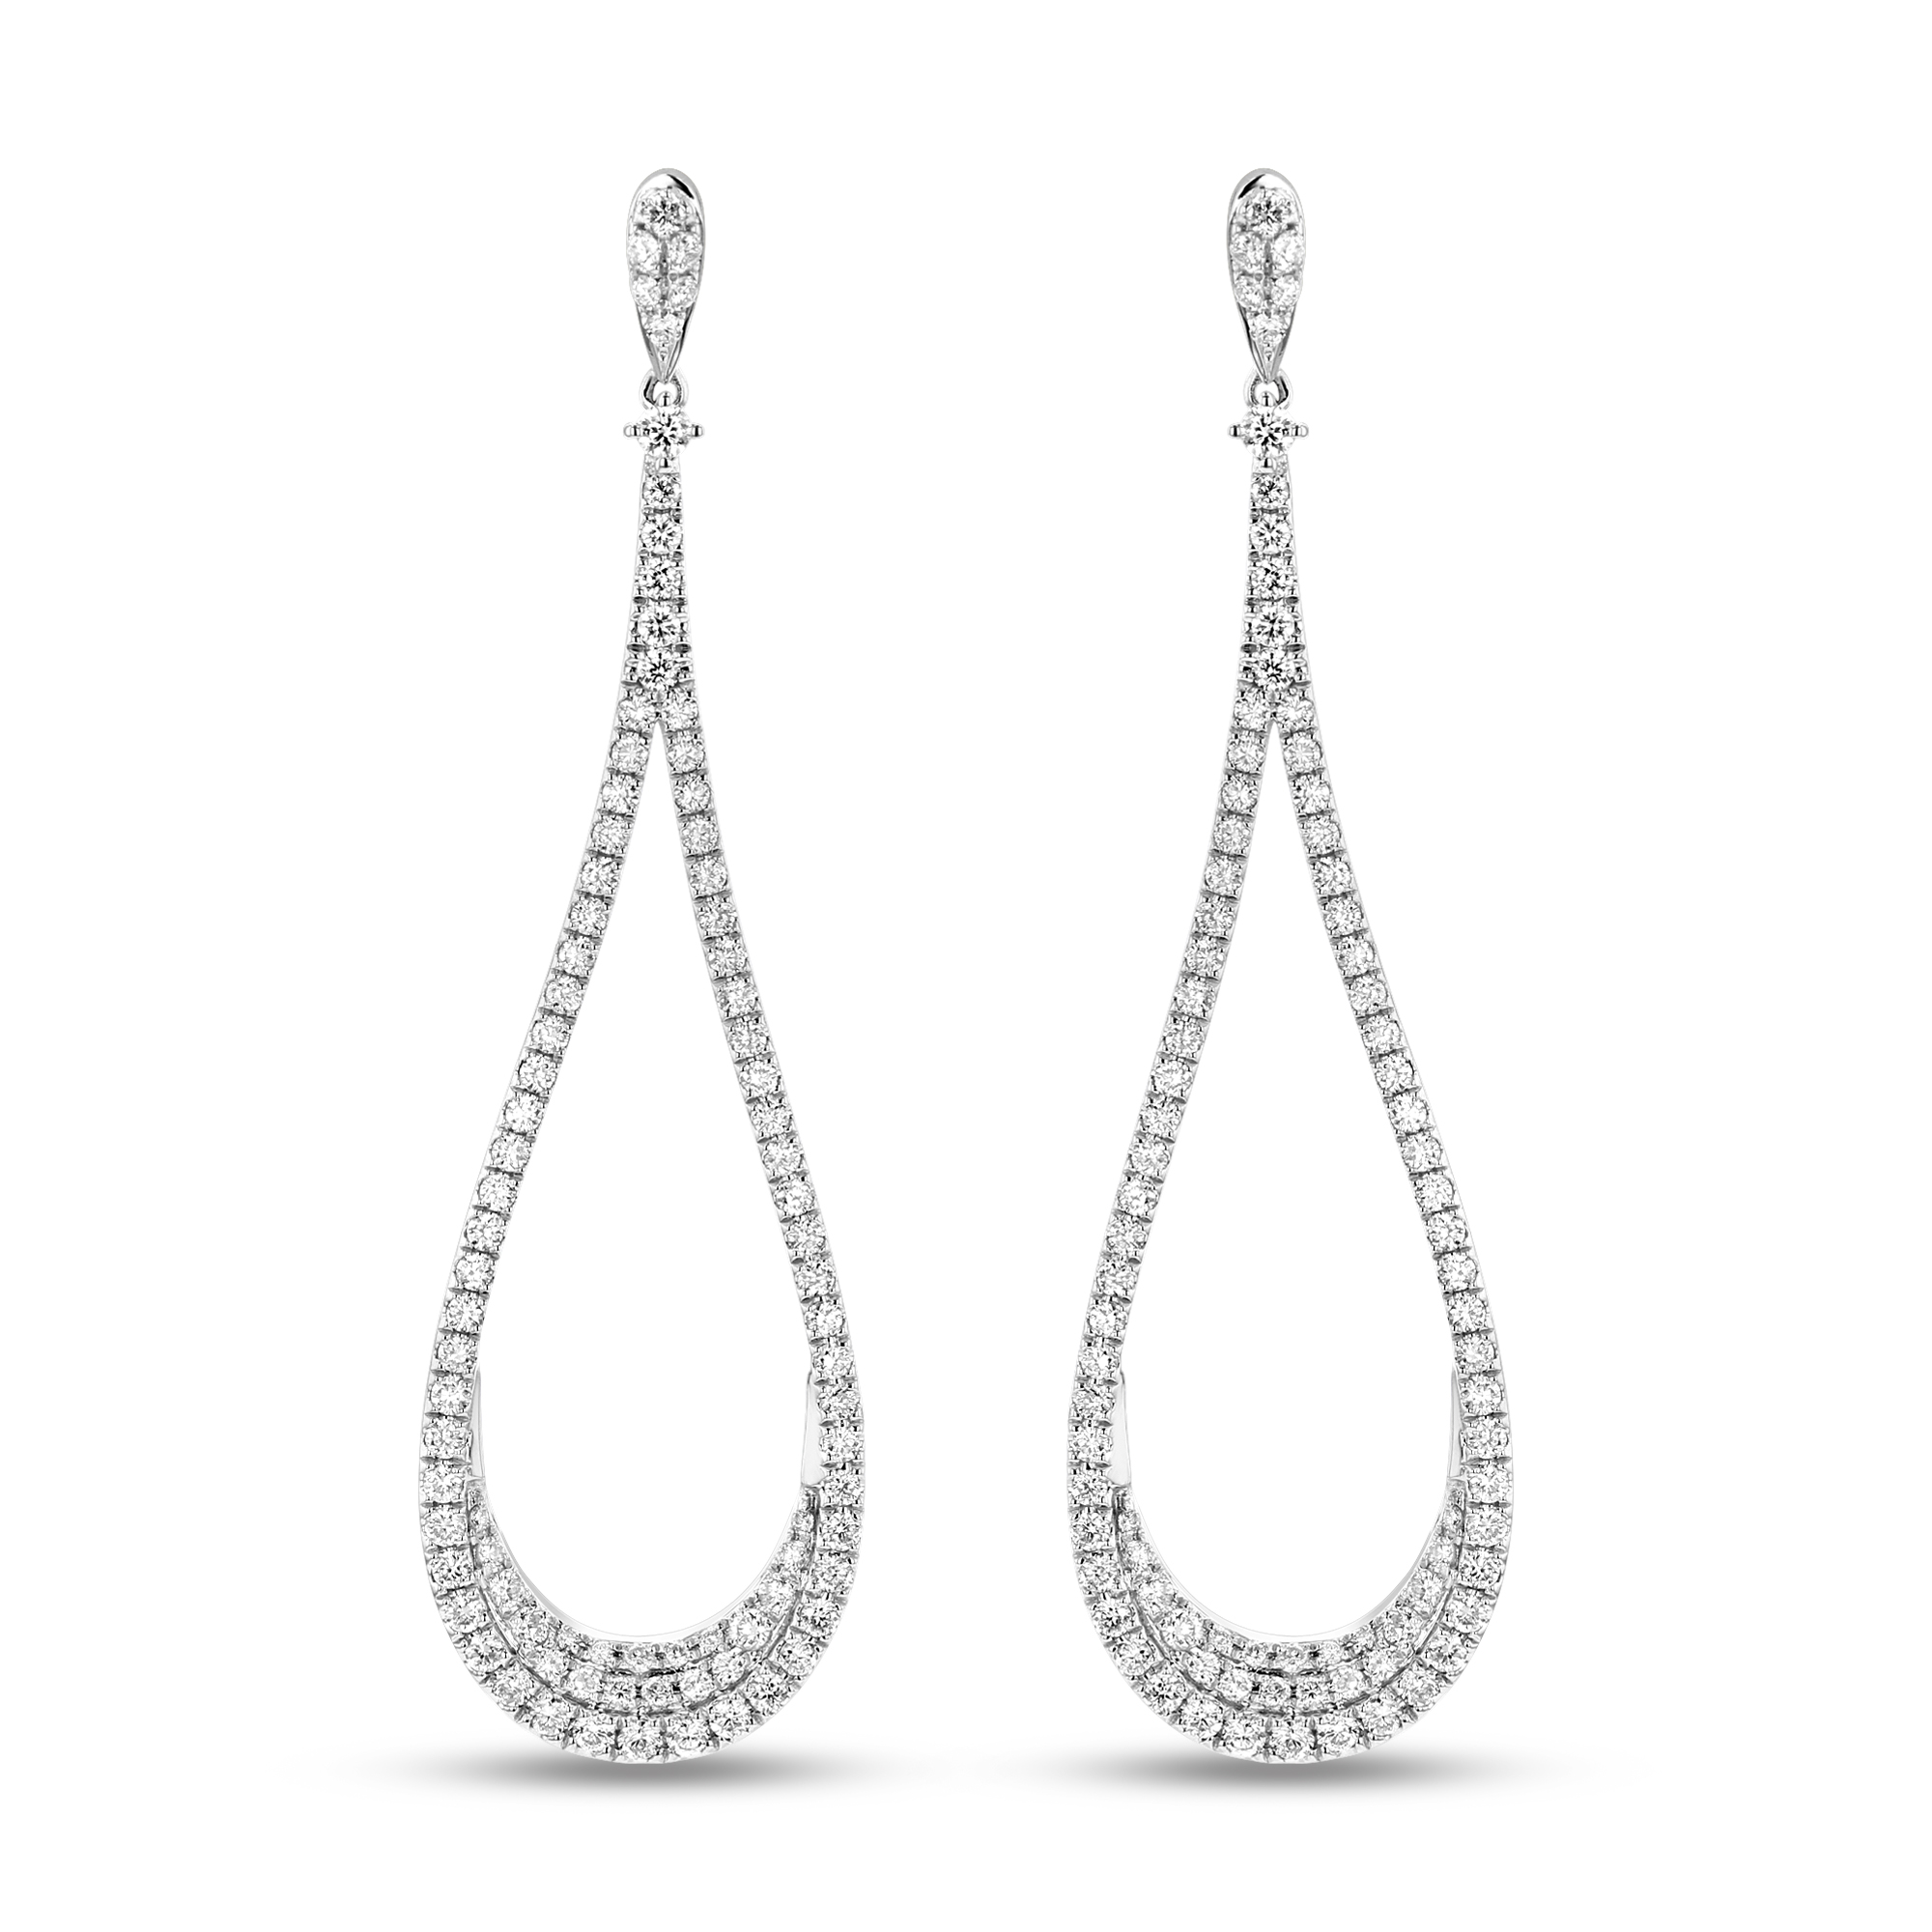 View 1.63ctw Diamond Rear Drop Dangling Earrings in 18k White Gold